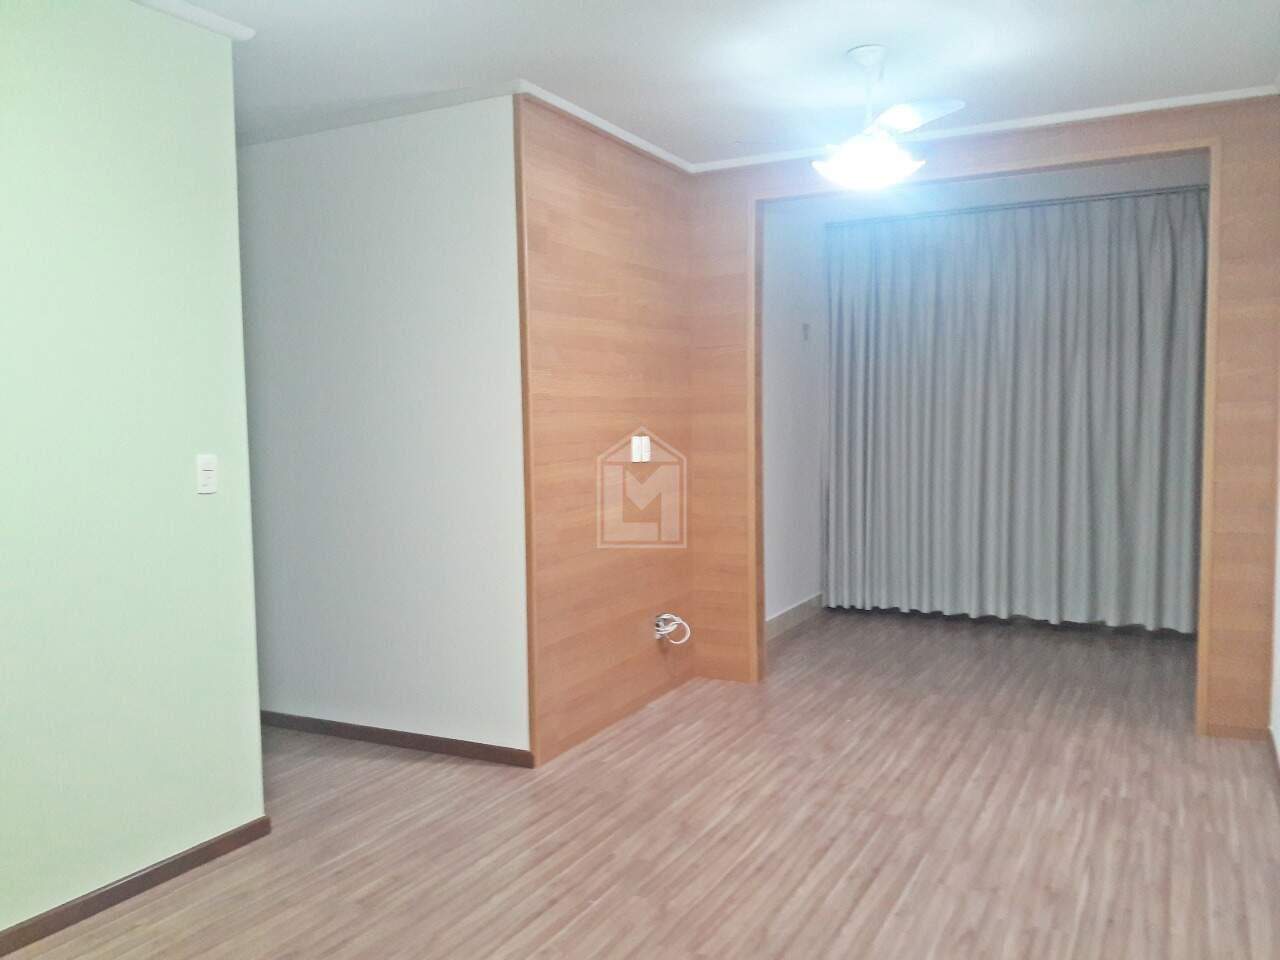 Apartamento, 3 quartos, 95 m² - Foto 1